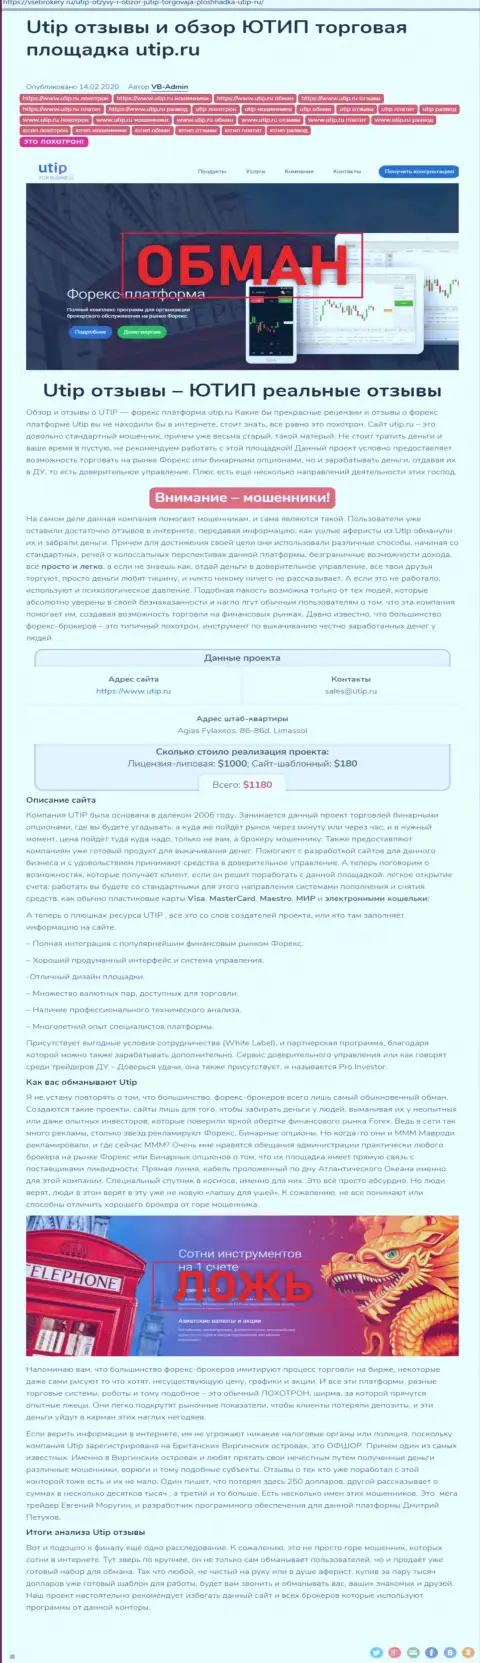 Обзор мошеннических деяний scam-компании UTIP - ЛОХОТРОНЩИКИ !!!